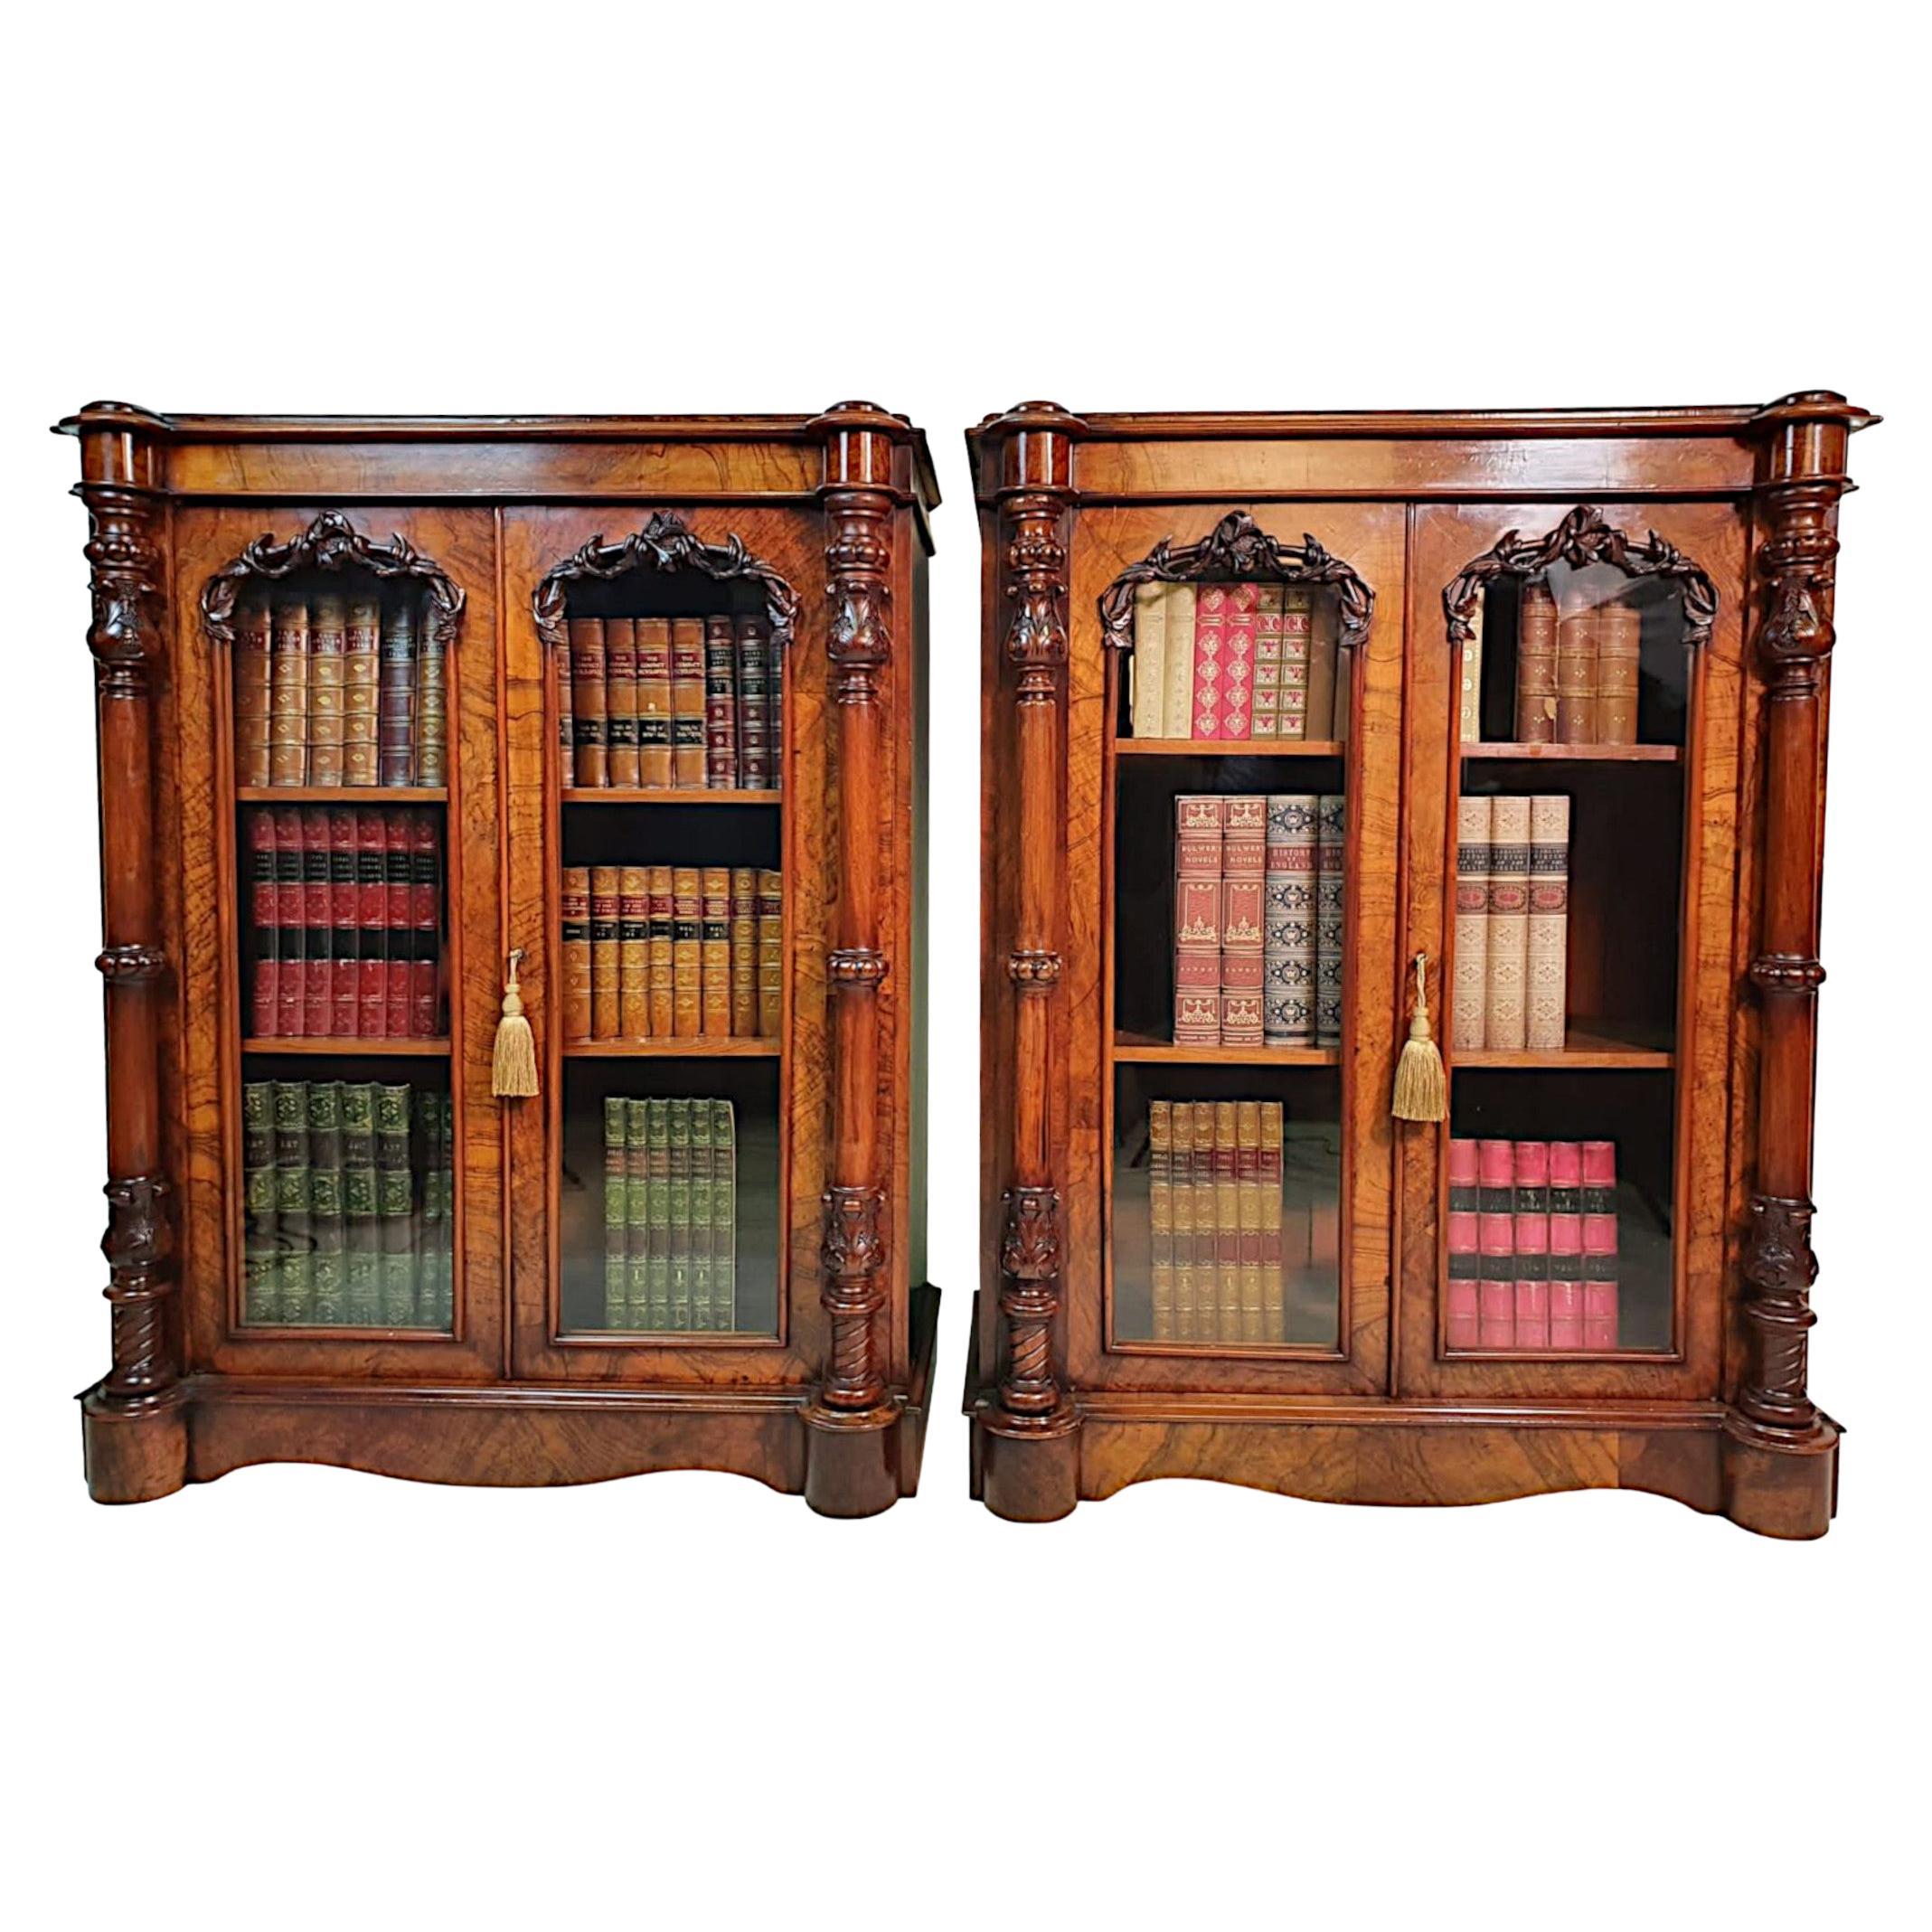 Rare Pair of Irish 19th Century Bookcases Attributed to Robert Strahan